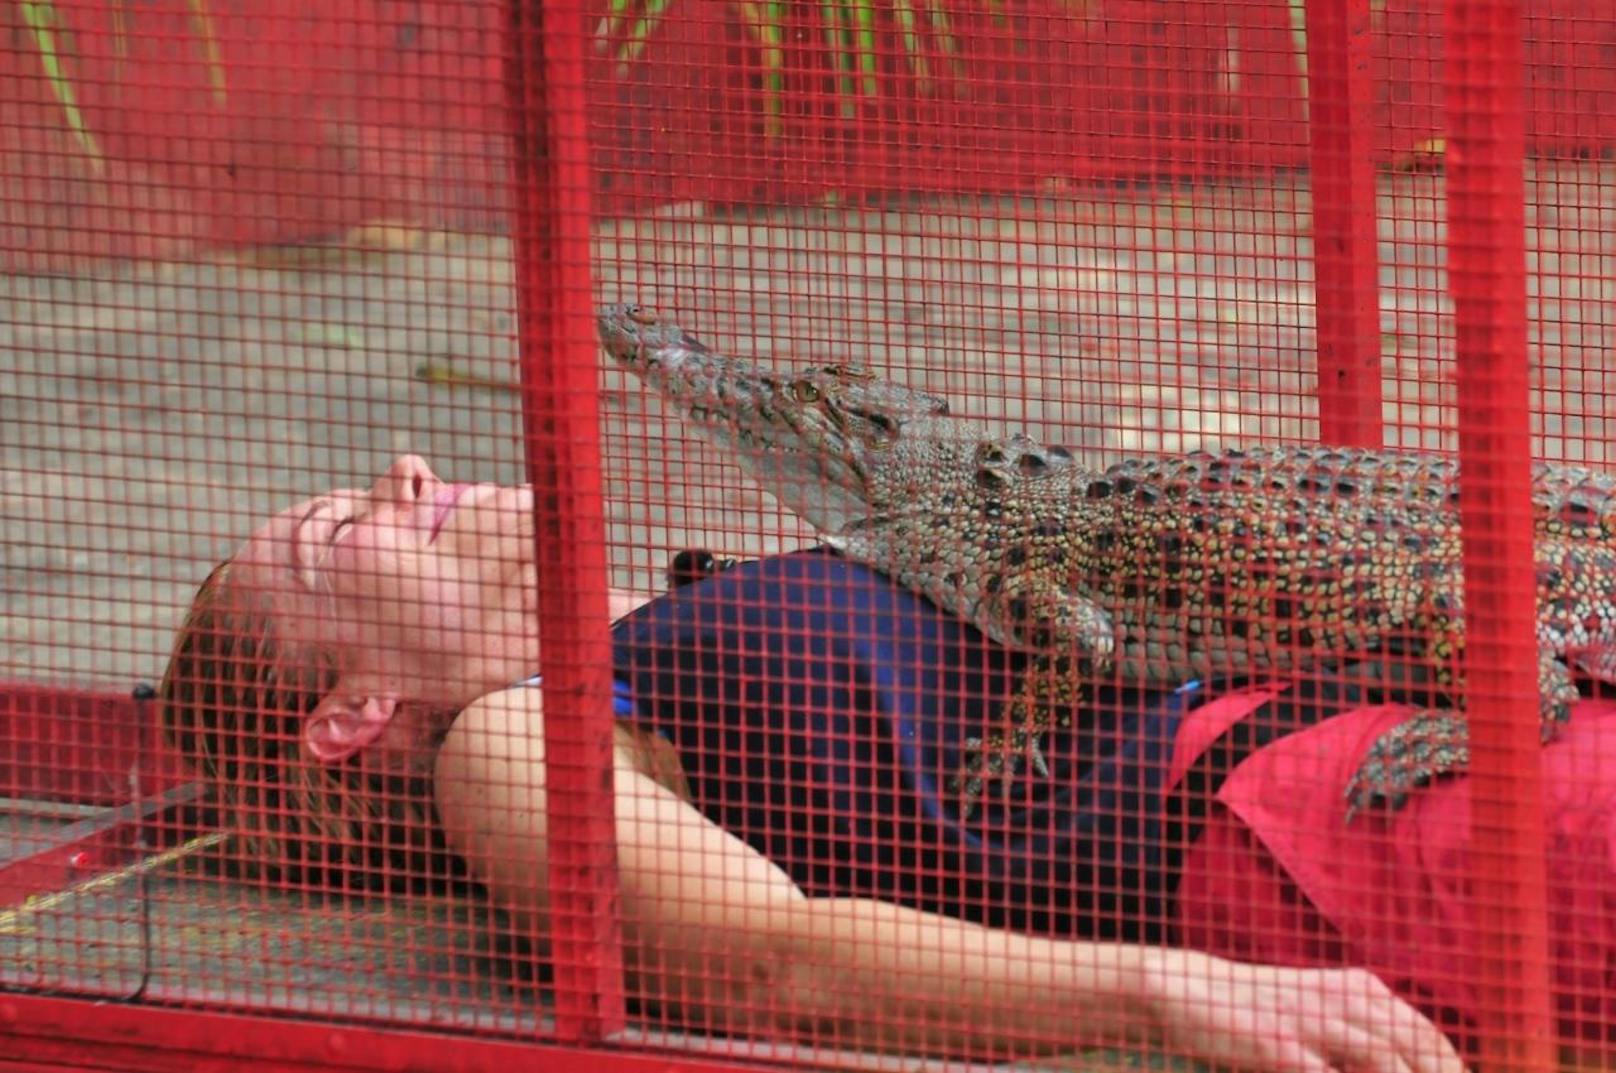 Doreen Dietel muss es mit einem Krokodil auf sich aushalten. Für Doreen hat die Prüfung keinen Schrecken. Sie entspannt sich und atmet mit dem Kroko im Gleichtakt. Leider entspannt sich auch das Krokodil - und pinkelt Doreen auf den Körper
